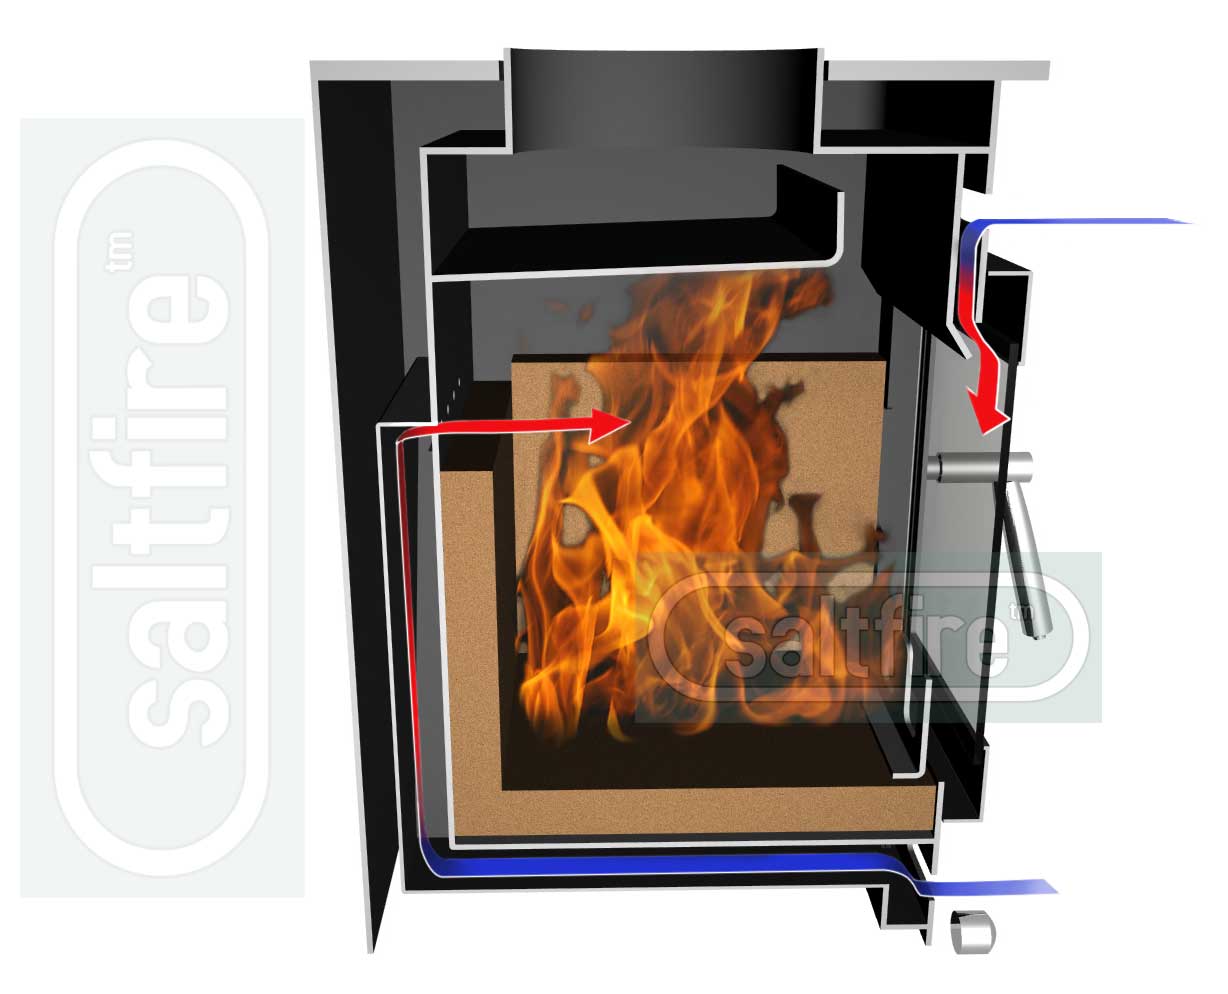 Saltfire ST1 wood burning stove 5kW Eco-Design/DEFRA approved